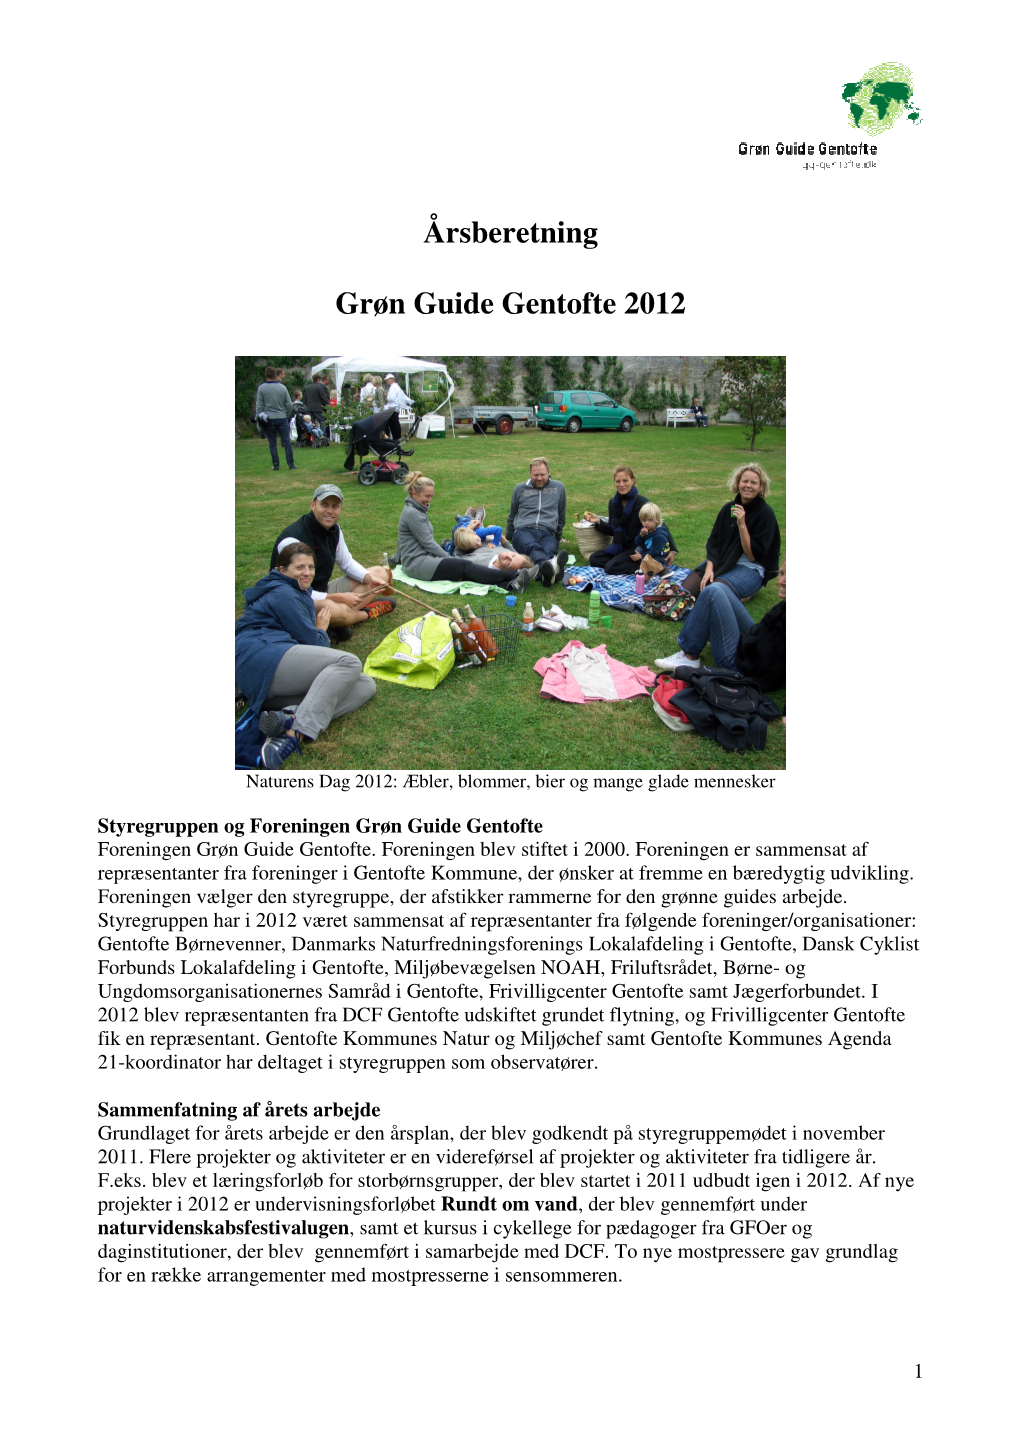 Årsberetning Grøn Guide Gentofte 2012